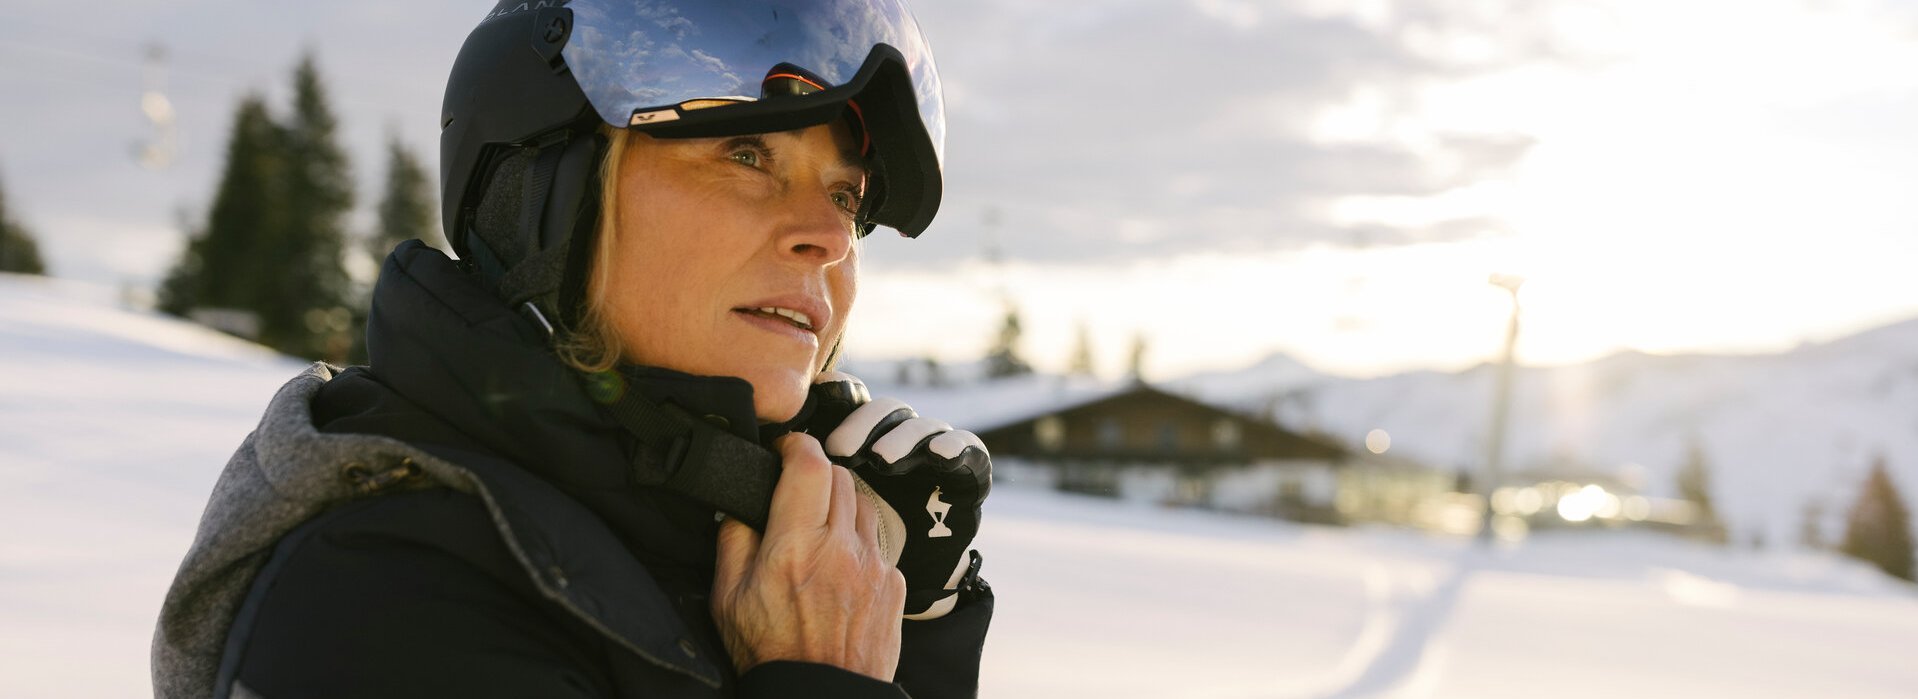 Eine reife Dame in Skiausrüstung richtet ihren Helm in einer Winterlandschaft